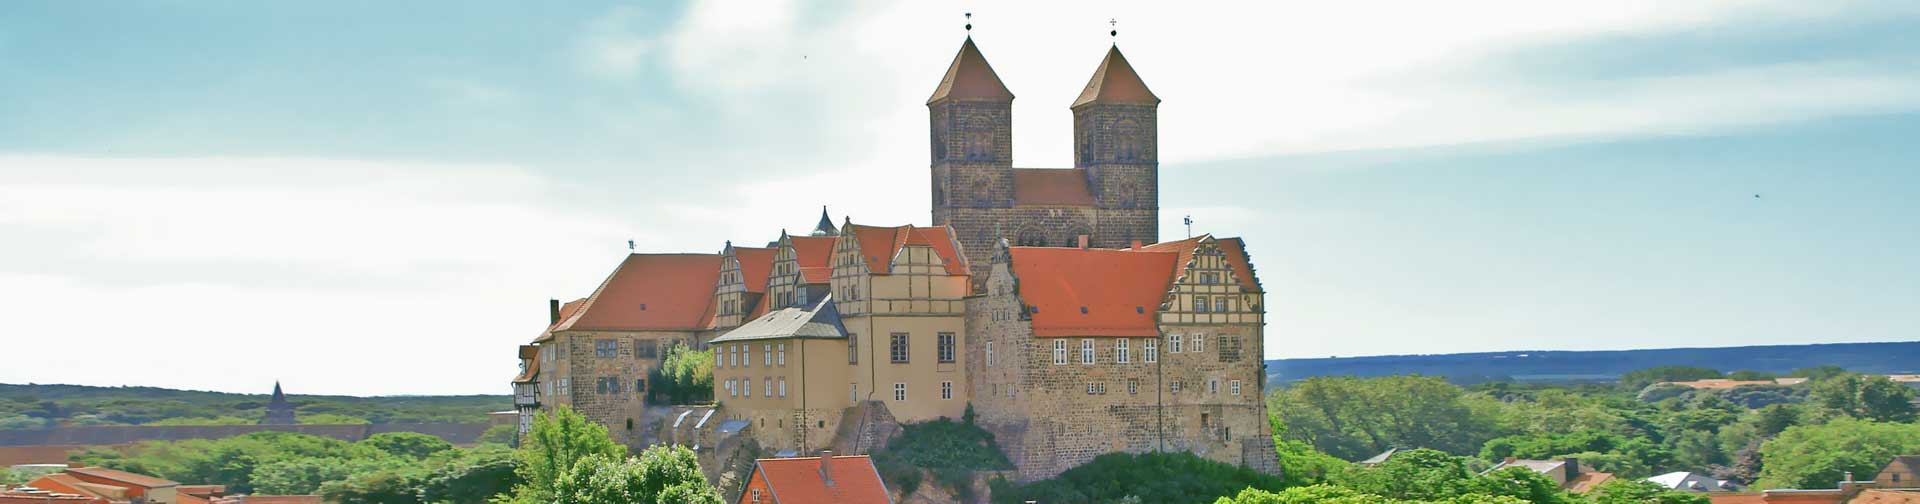 Quedlinburg. Castle